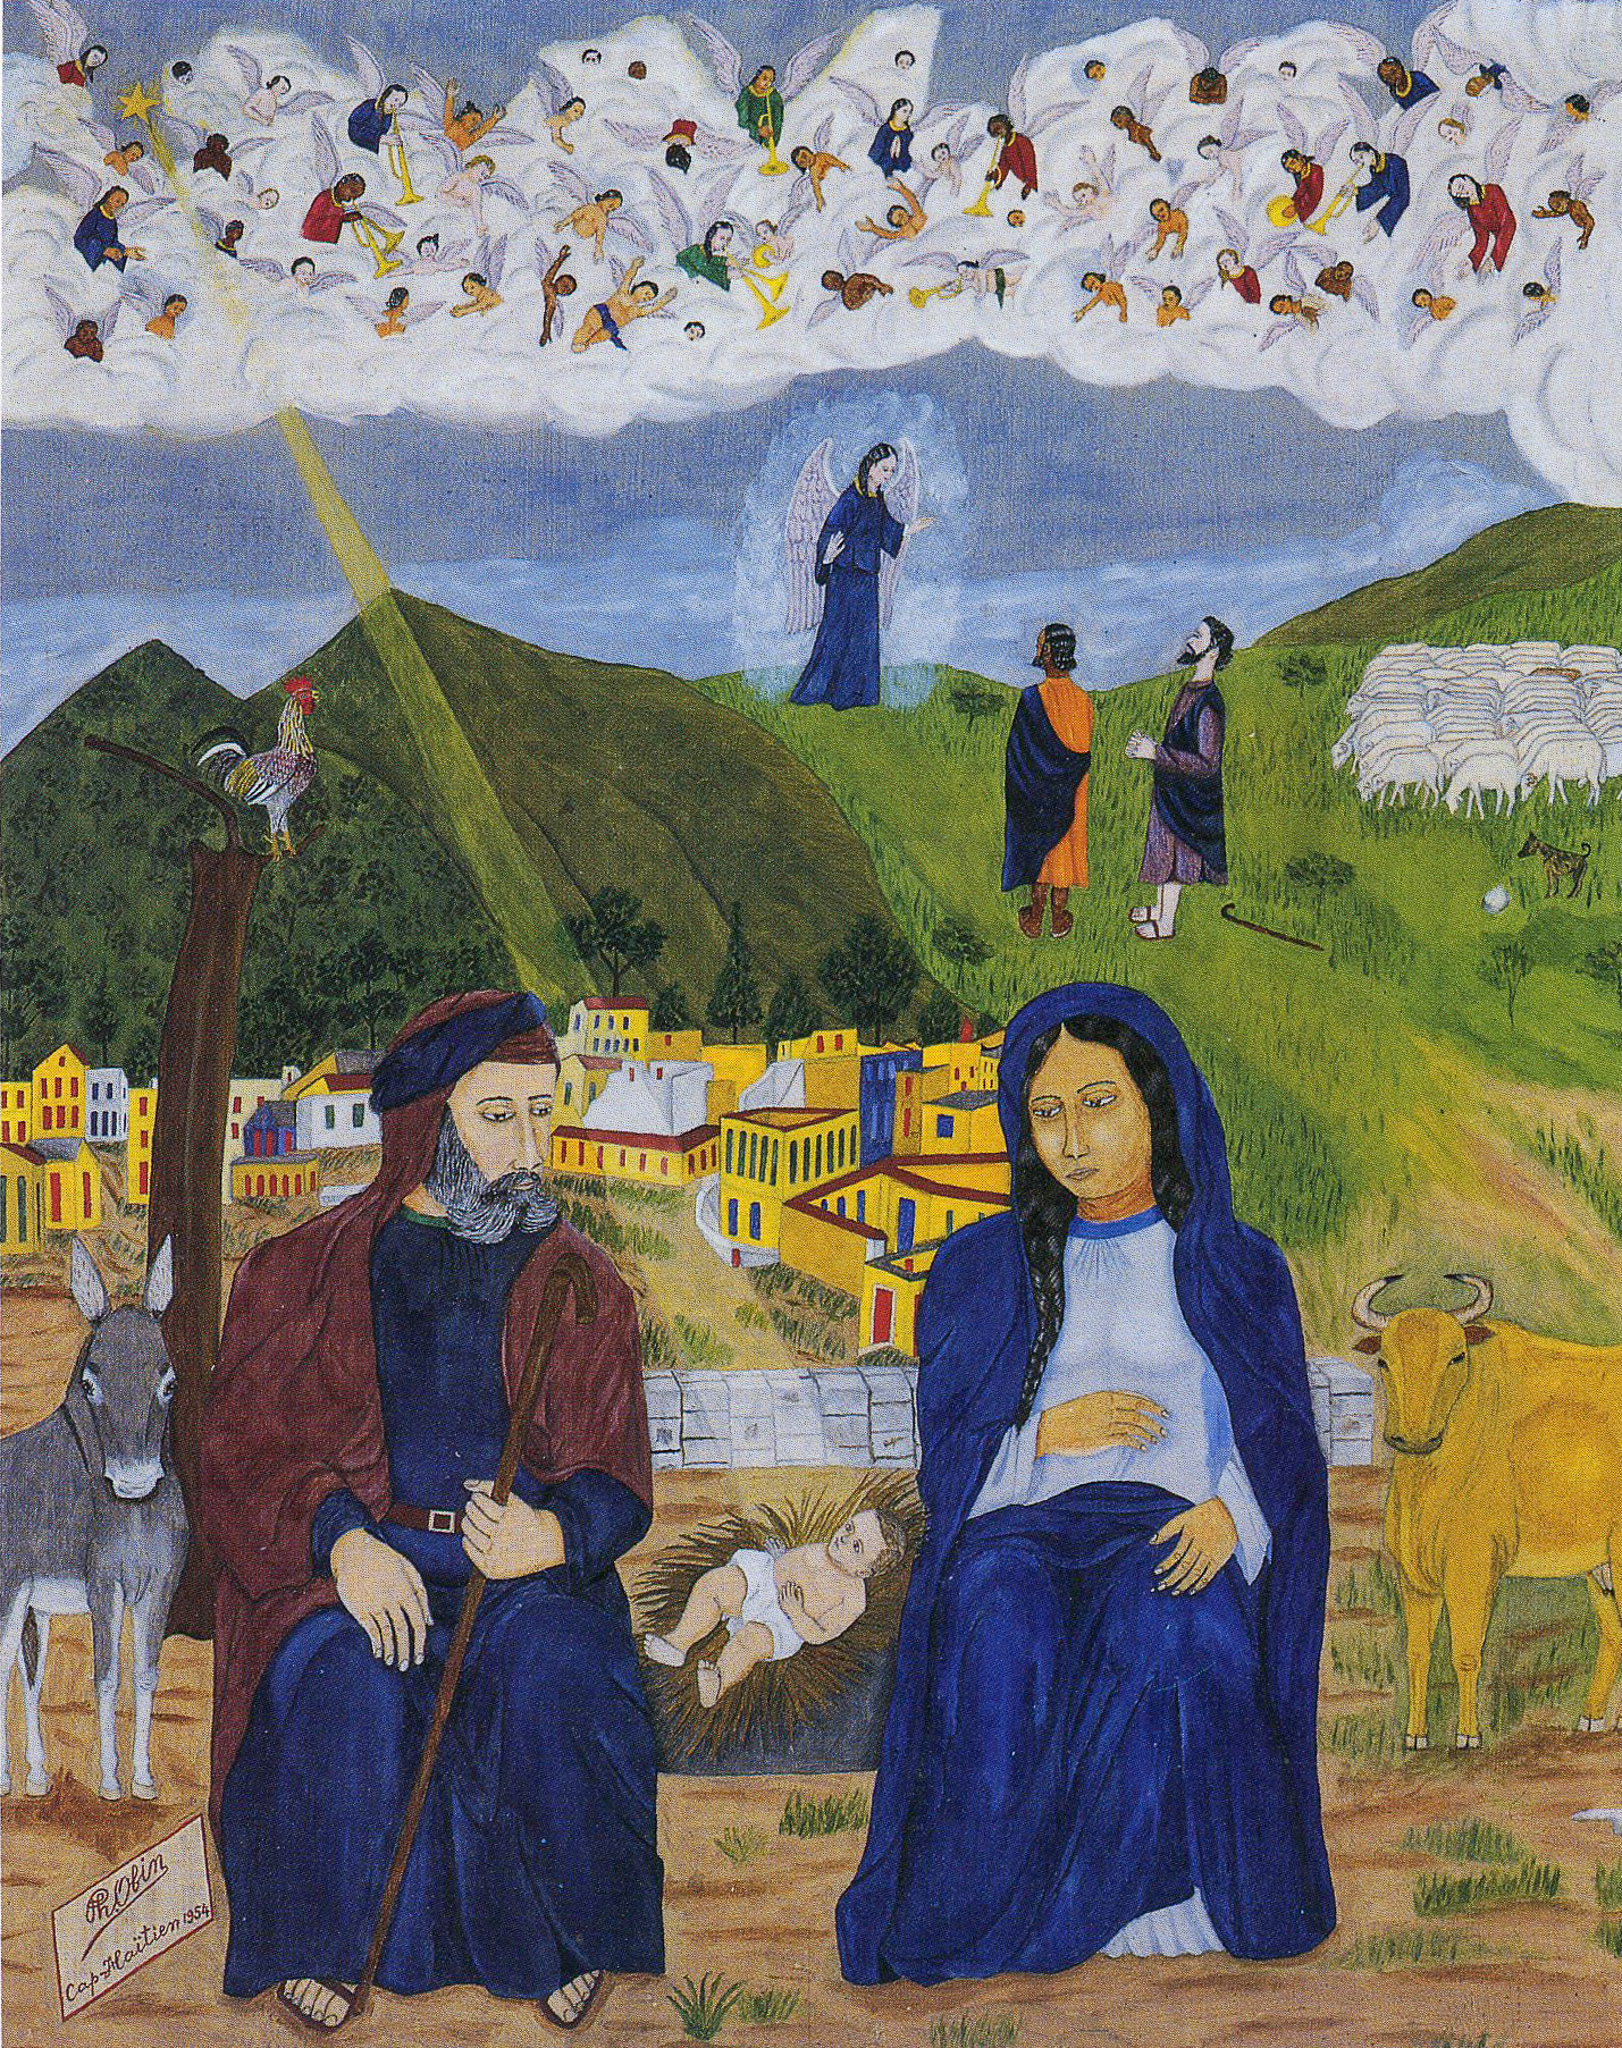 La Naissance de Jesus (Nativity), 1954